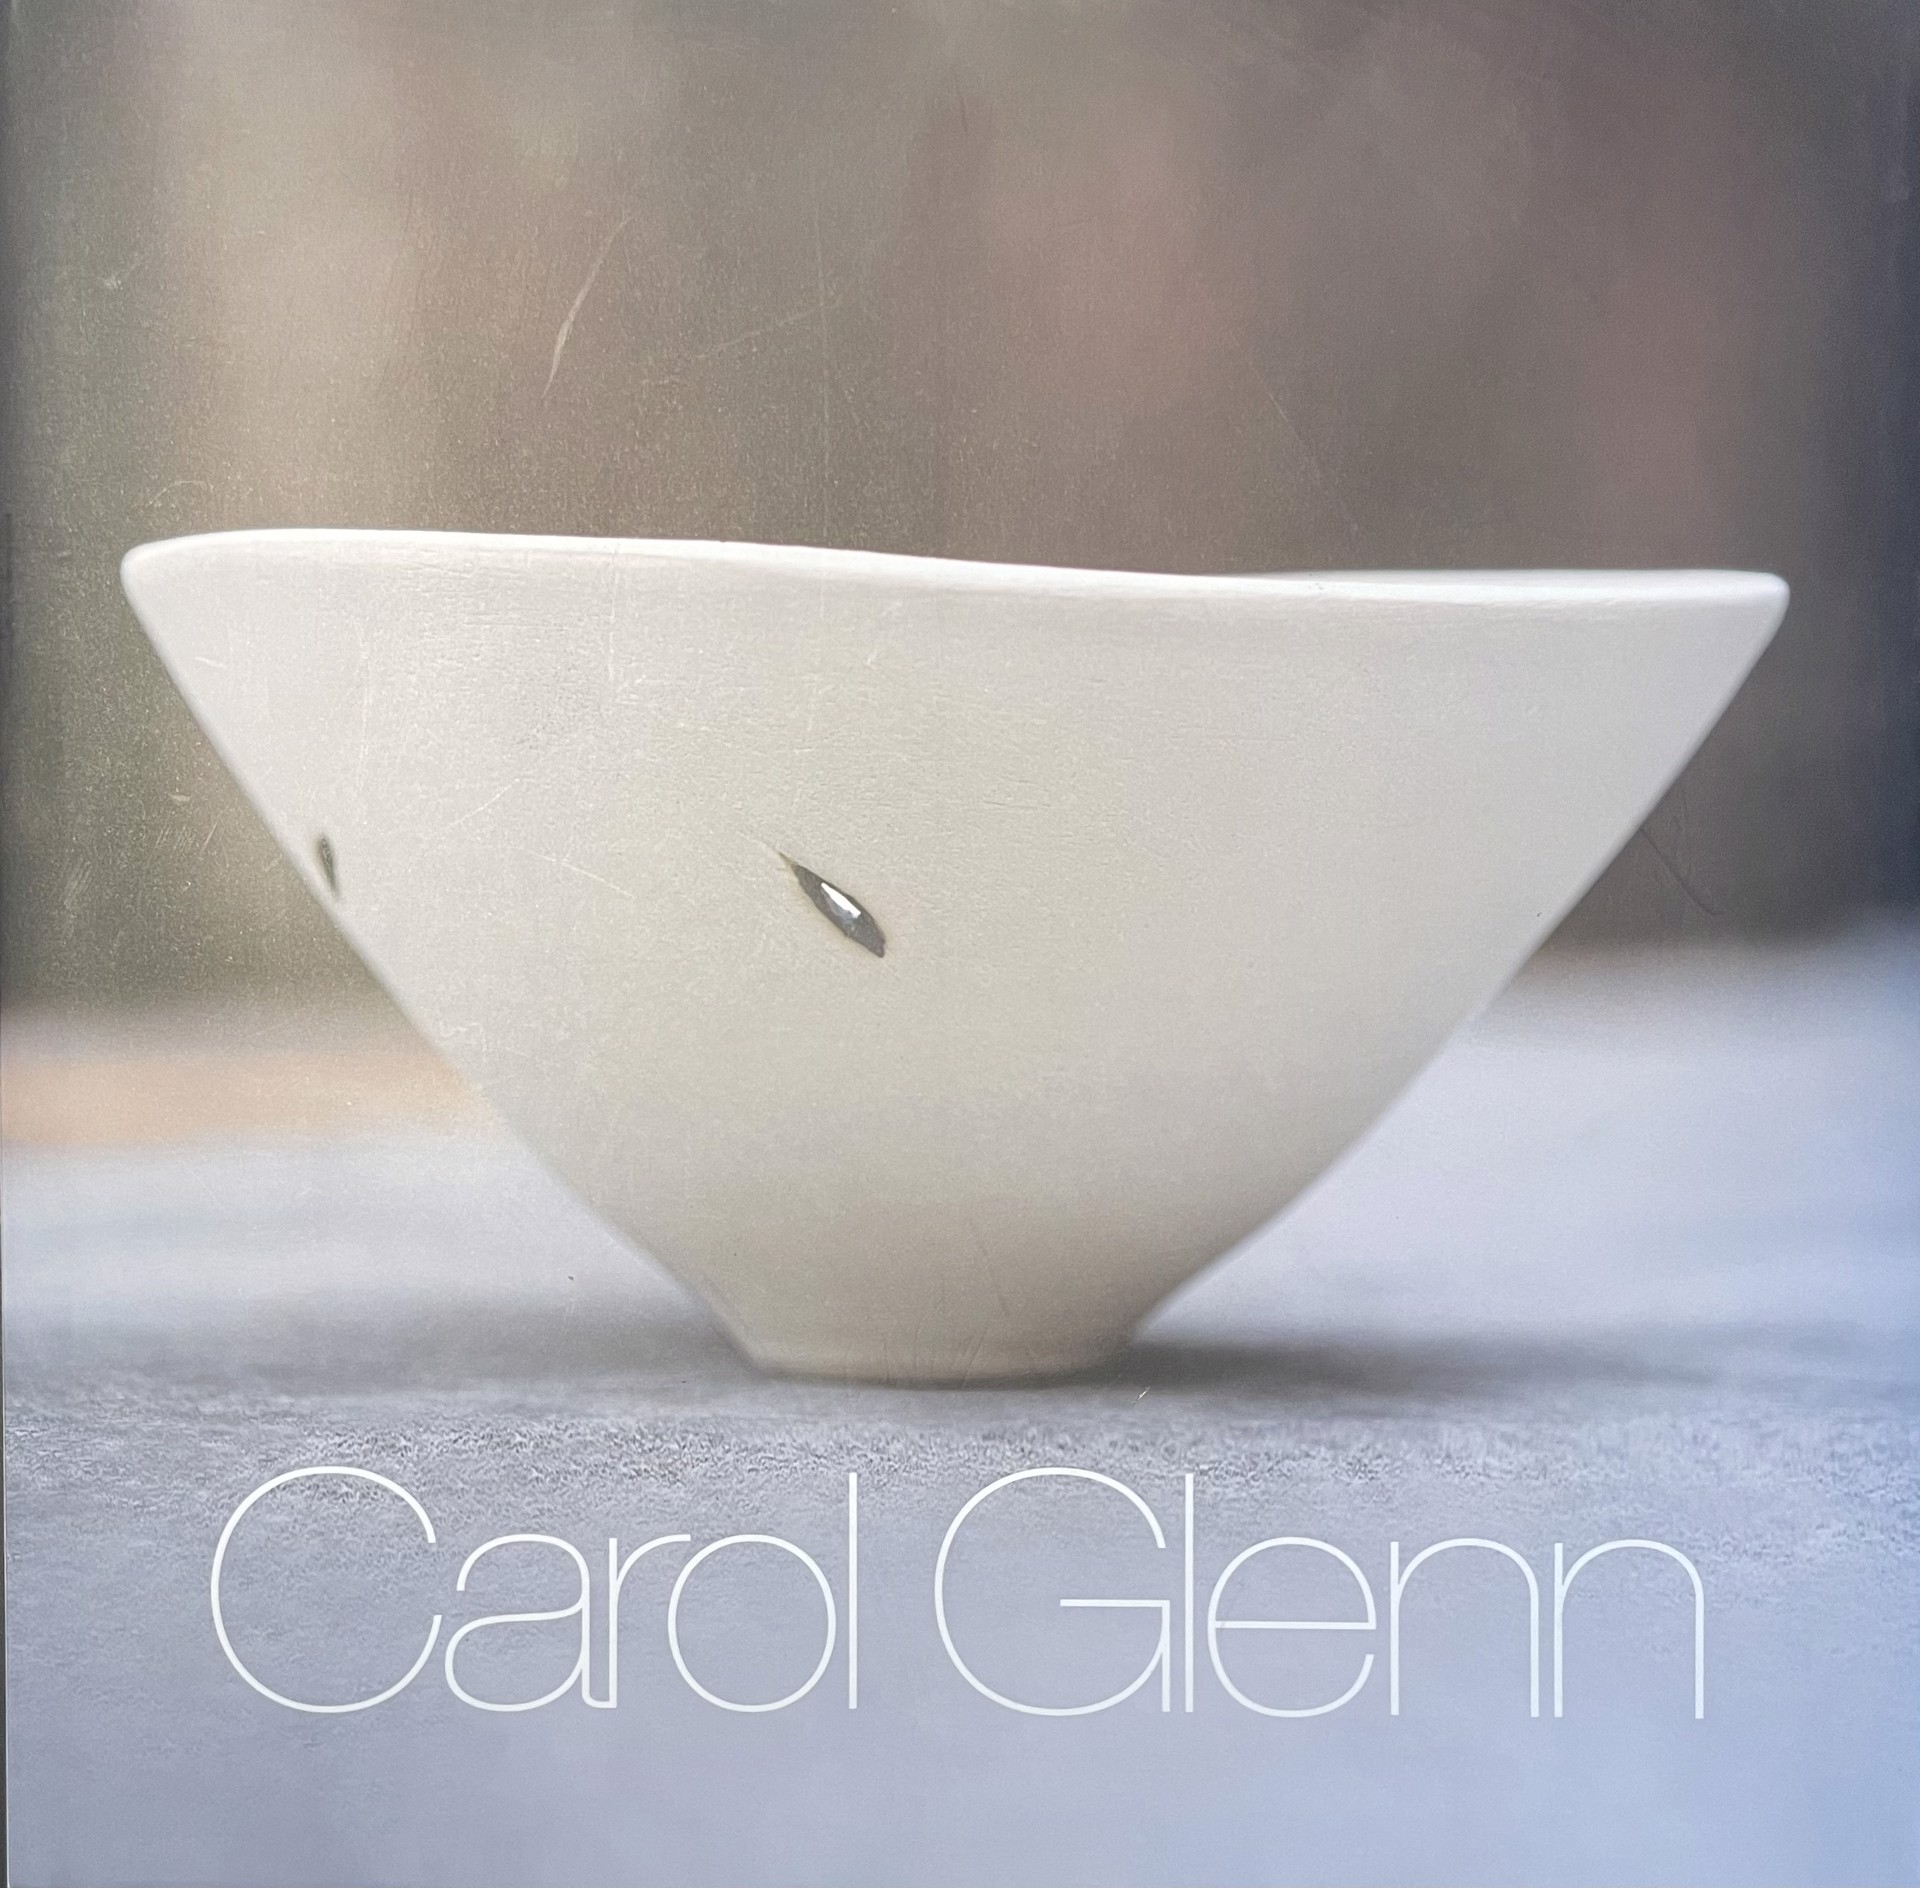 Carol Glenn by Carol Glenn